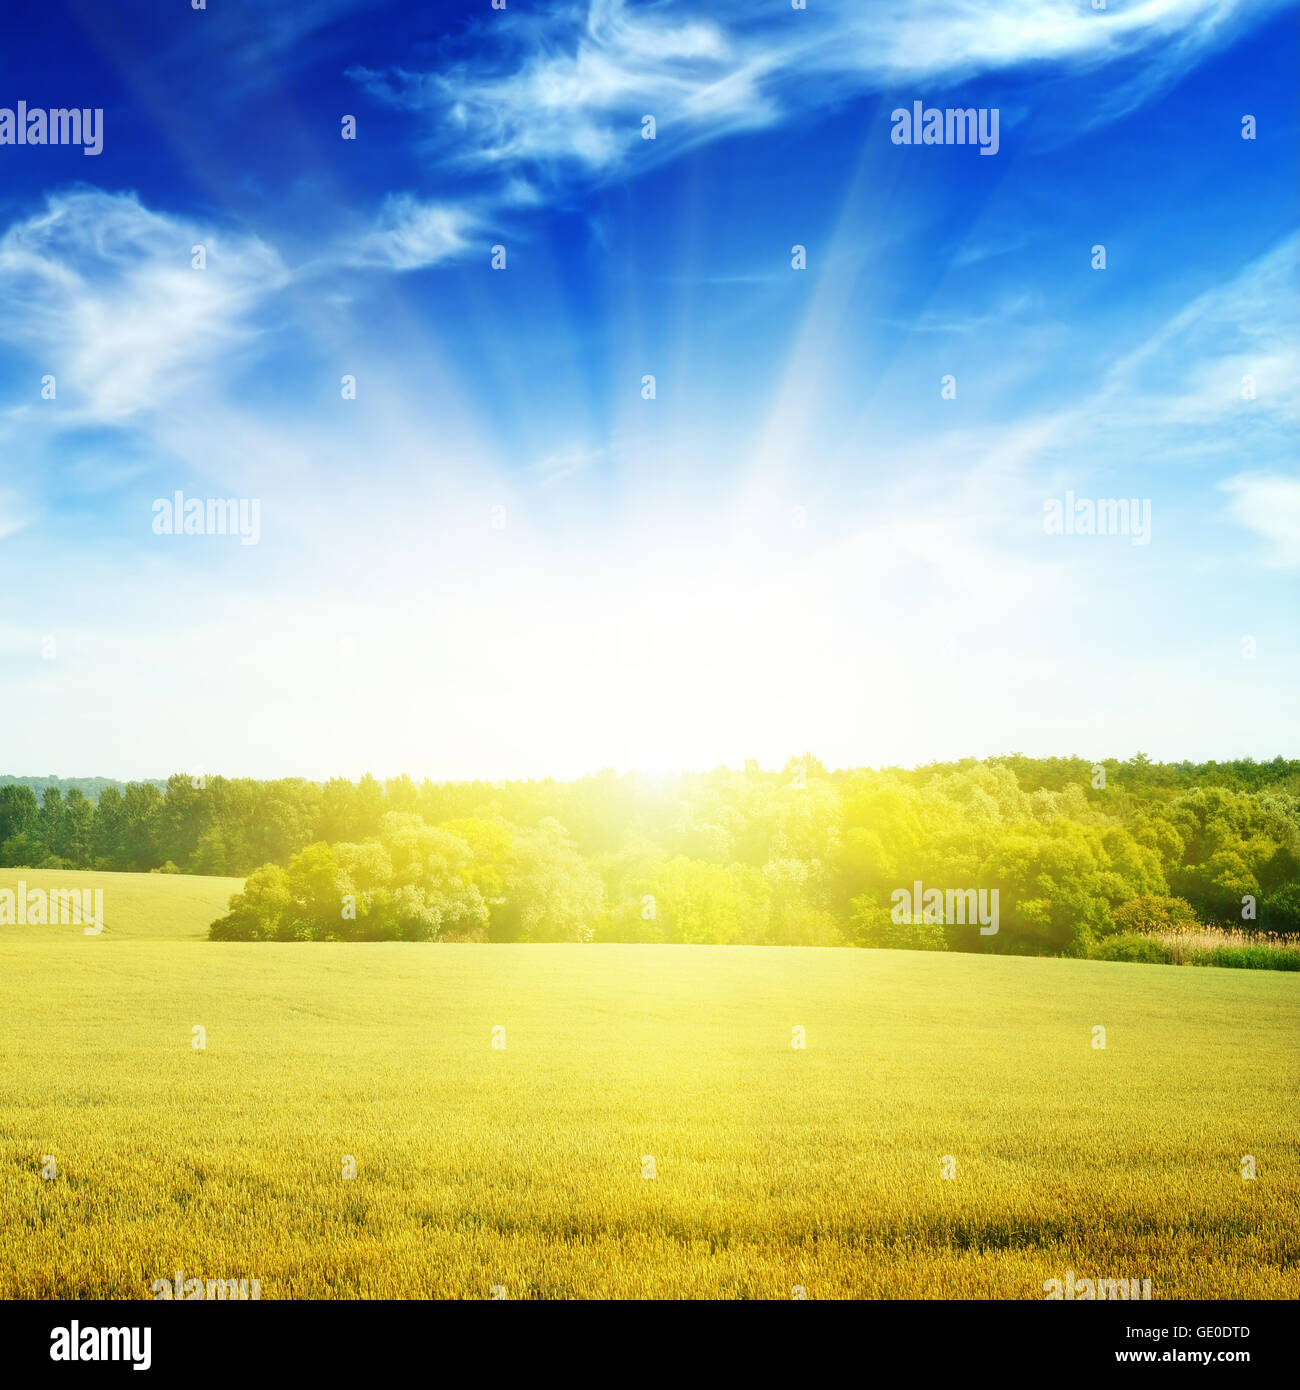 Field illuminated by the sun Stock Photo